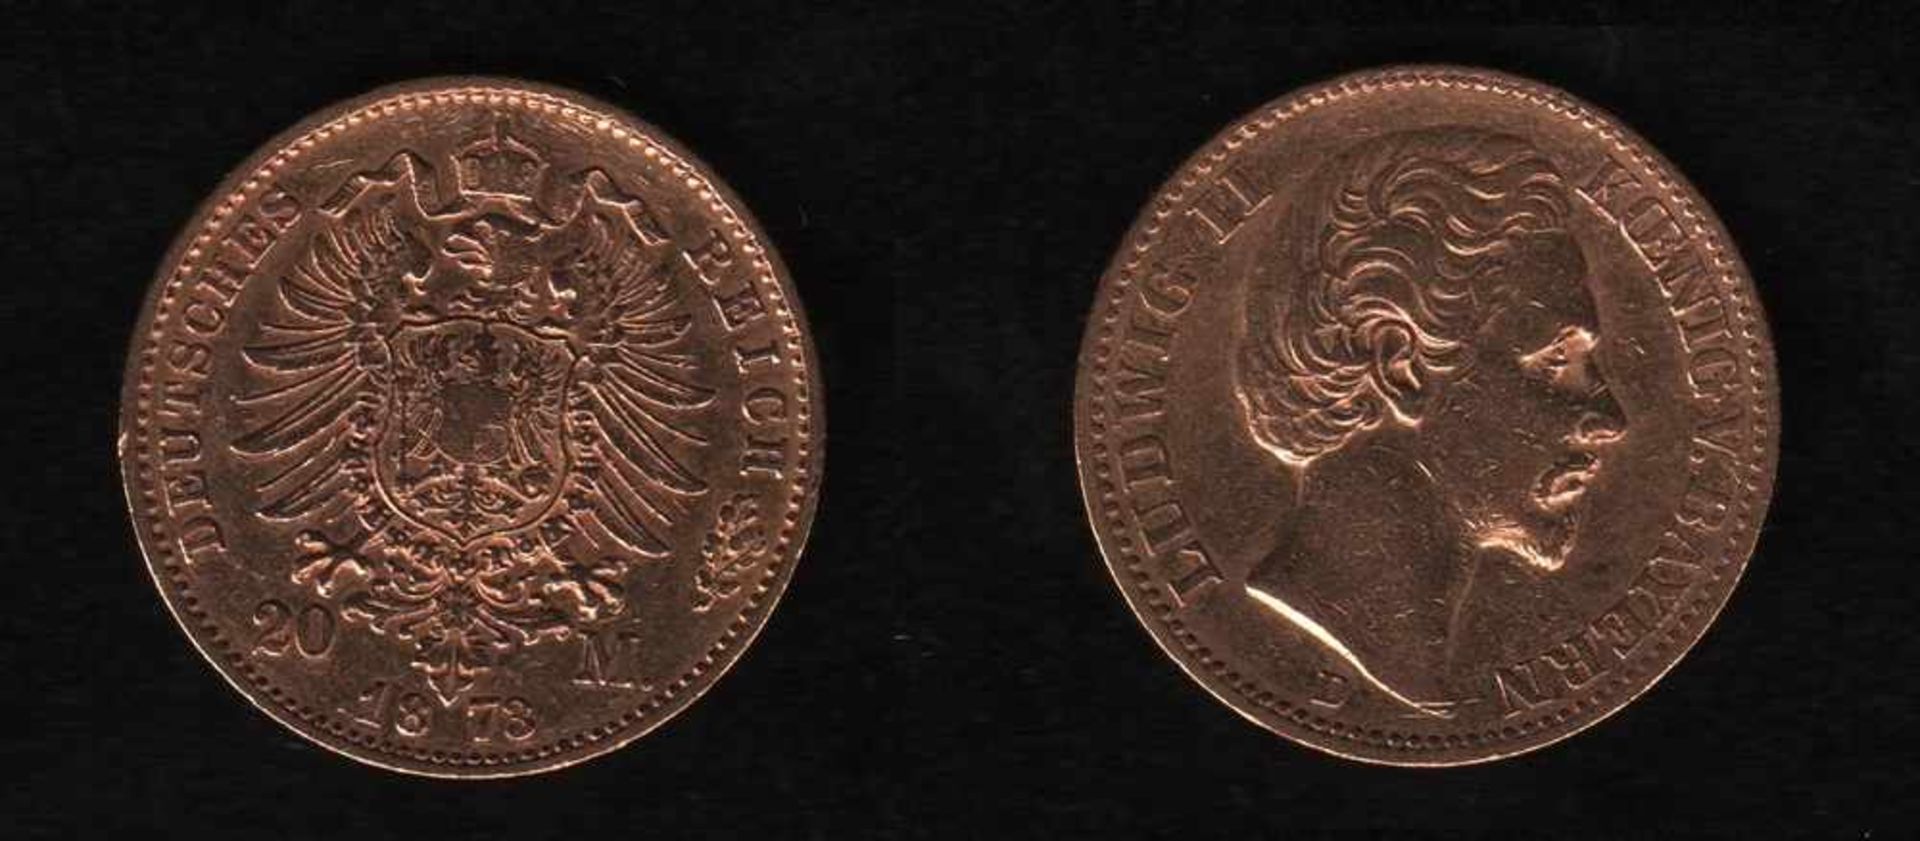 Deutsches Reich. Goldmünze.20 Mark. Ludwig II., König von Bayern. D 1873. Vorderseite: Porträt